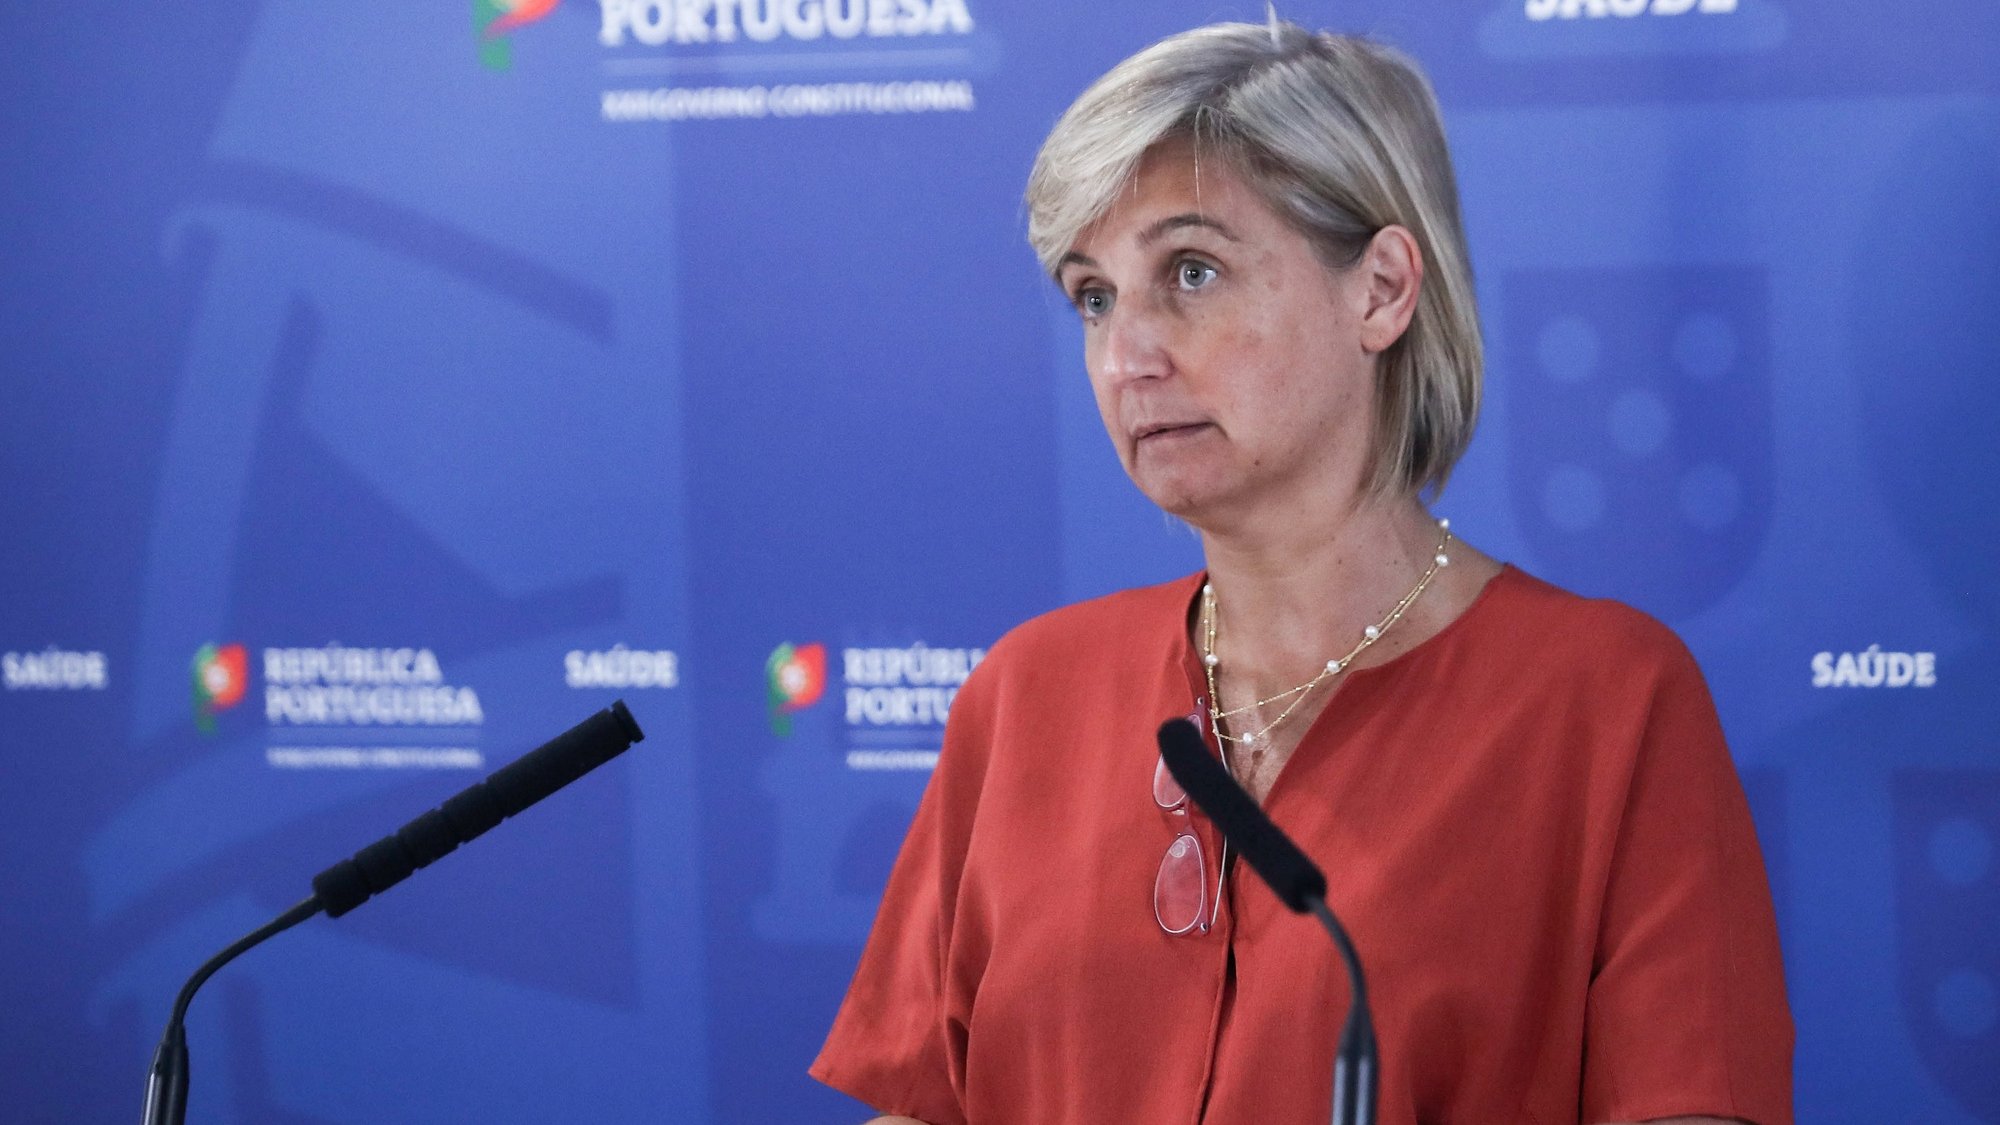 A ministra da Saúde, Marta Temido, fala aos jornalistas durante uma conferência de imprensa sobre os problemas no Serviço Nacional de Saúde (SNS), em Lisboa, 15 de junho de 2022. ANTÓNIO COTRIM/LUSA